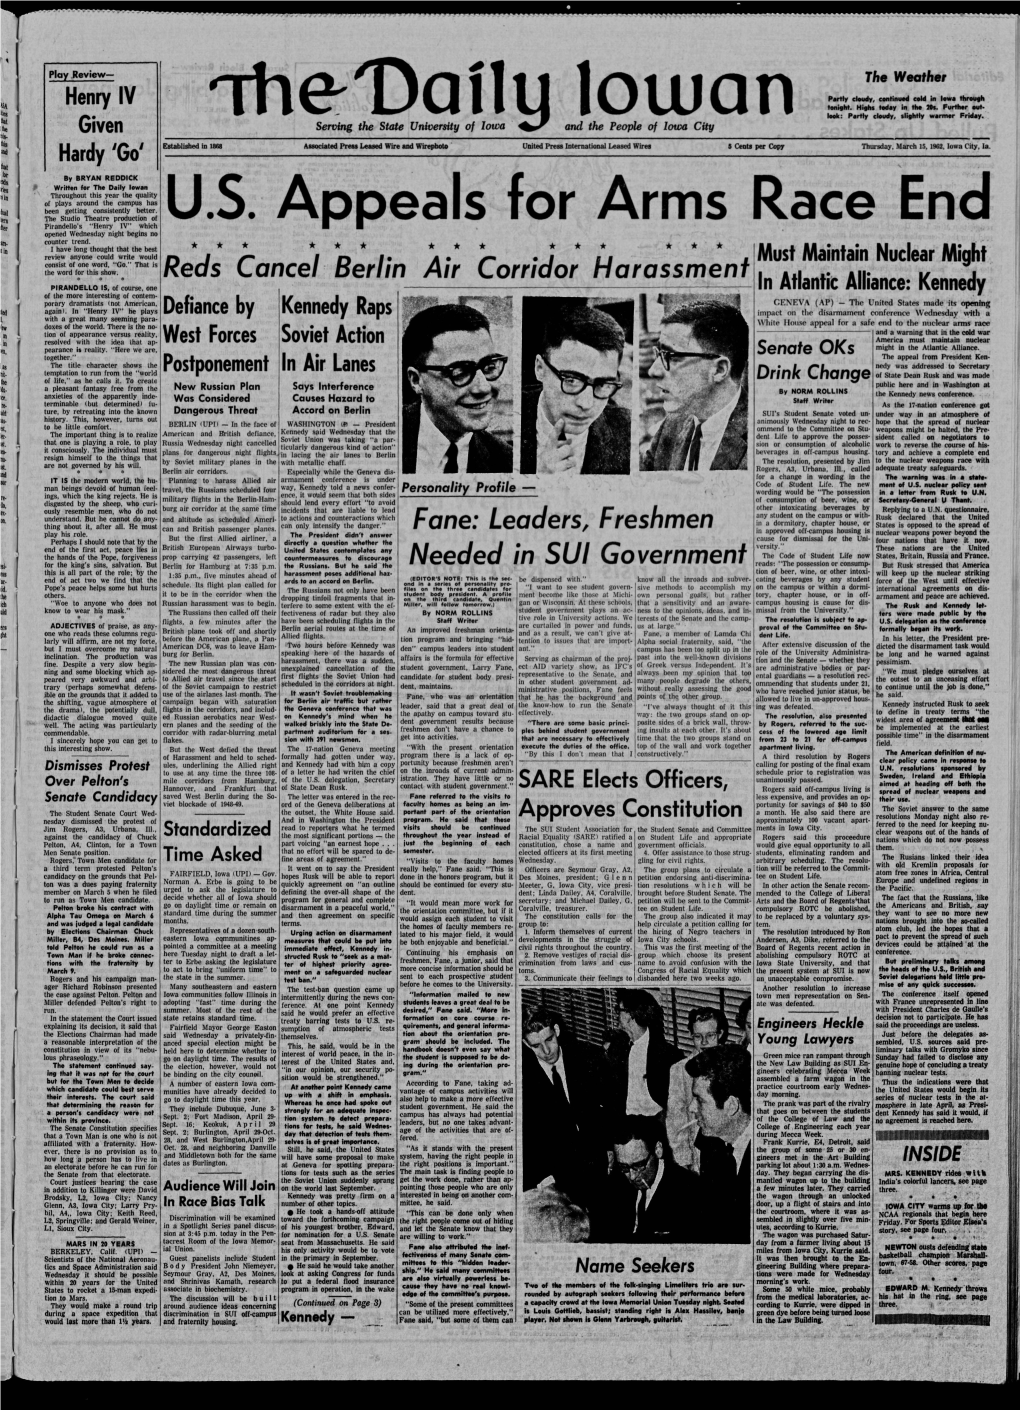 Daily Iowan (Iowa City, Iowa), 1962-03-15